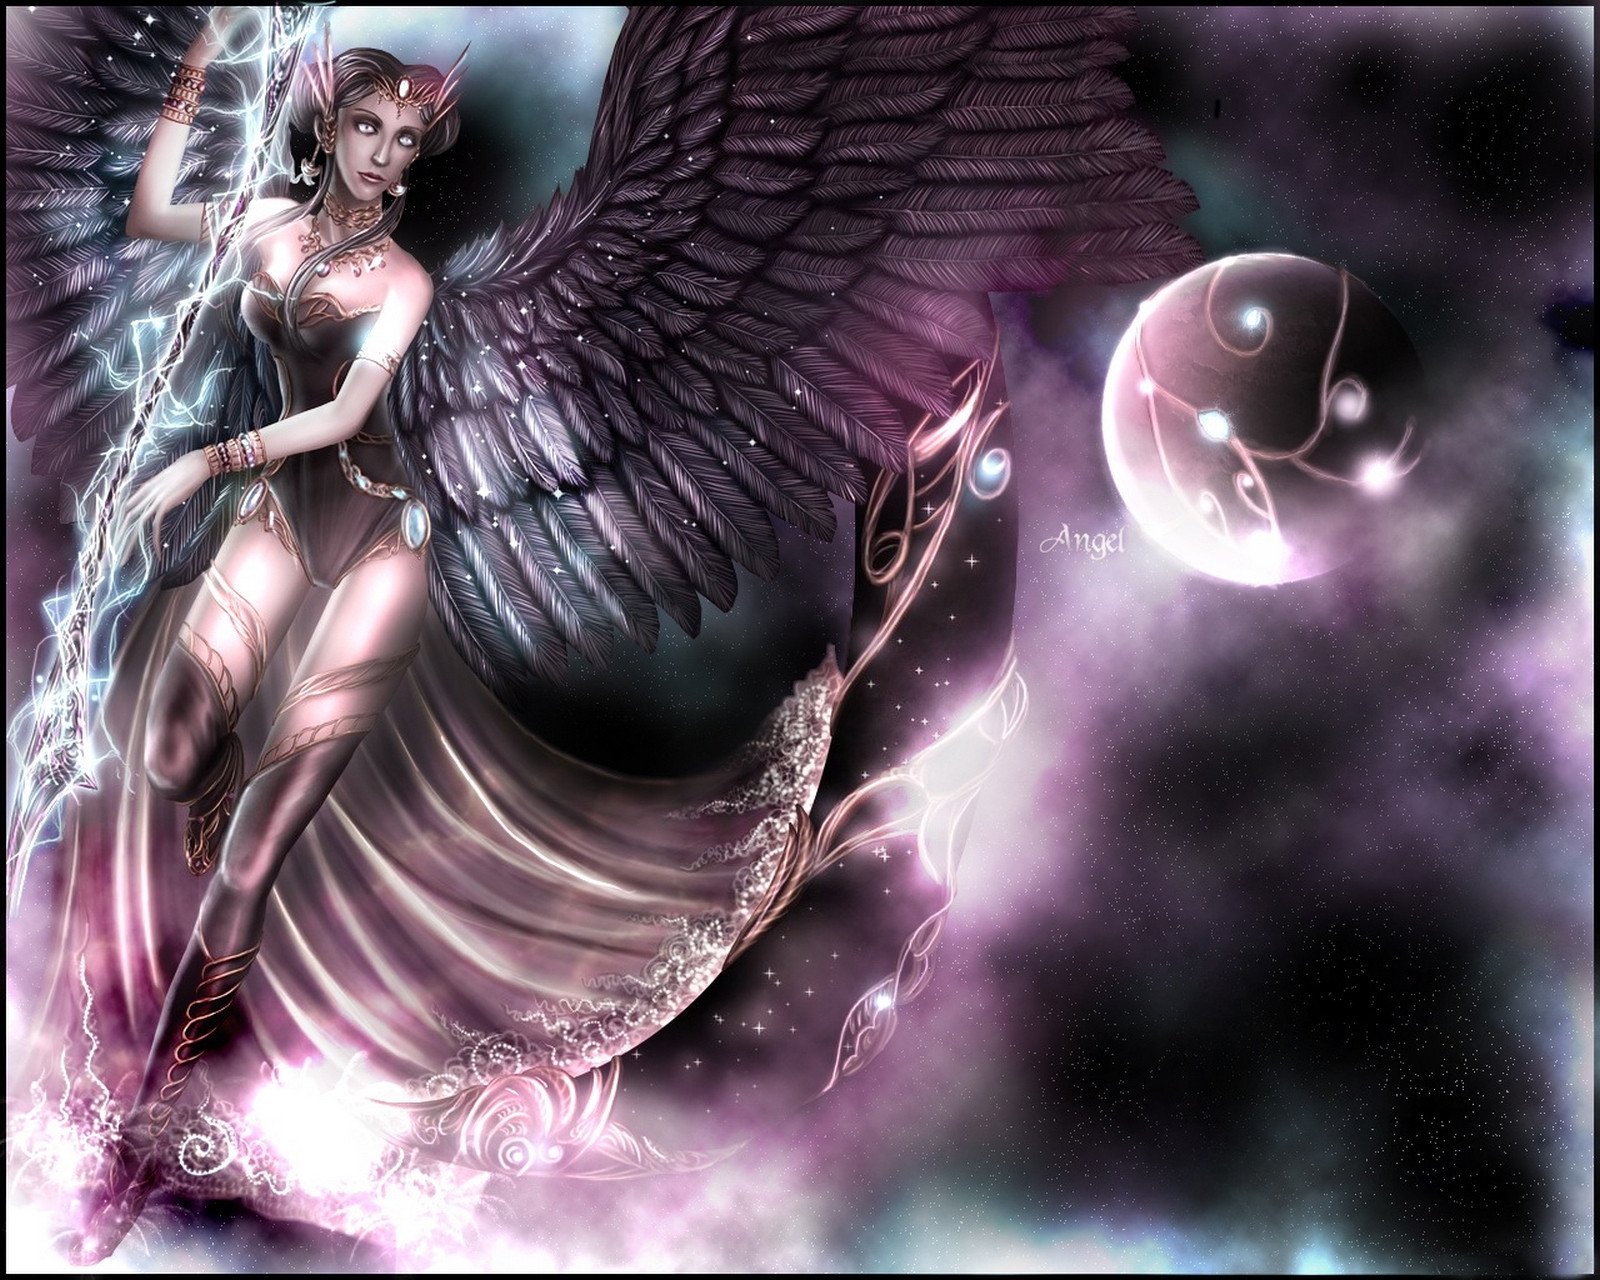 3d обои Ангел с огромными крыльями в космосе (Angel)  космос # 45467